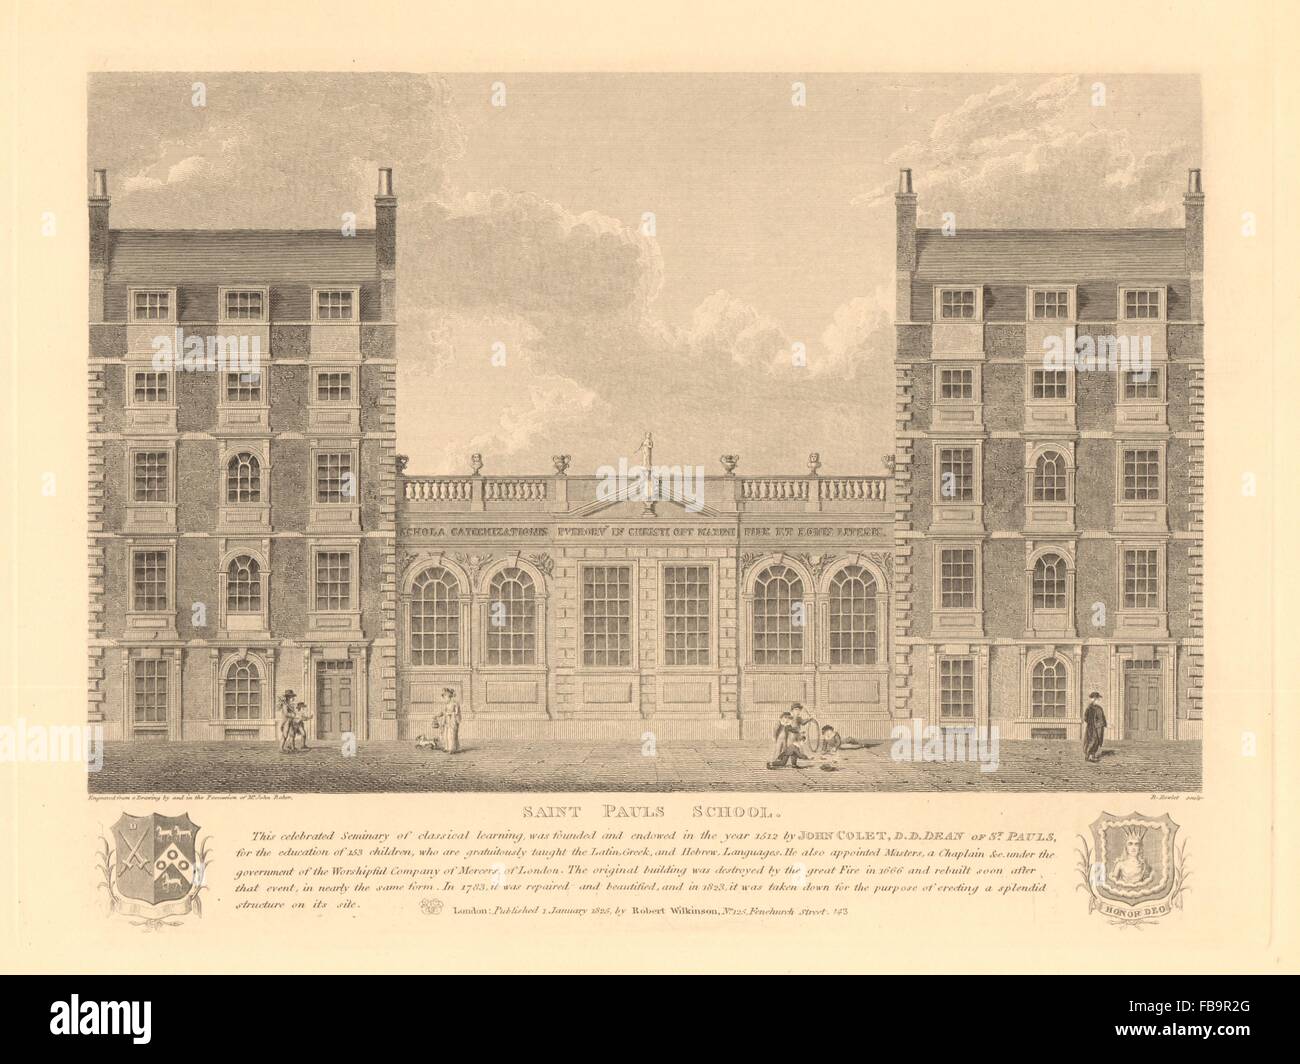 SAINT PAUL l'école, sur son site Cheapside. John Colet. Londres, 1834 Banque D'Images